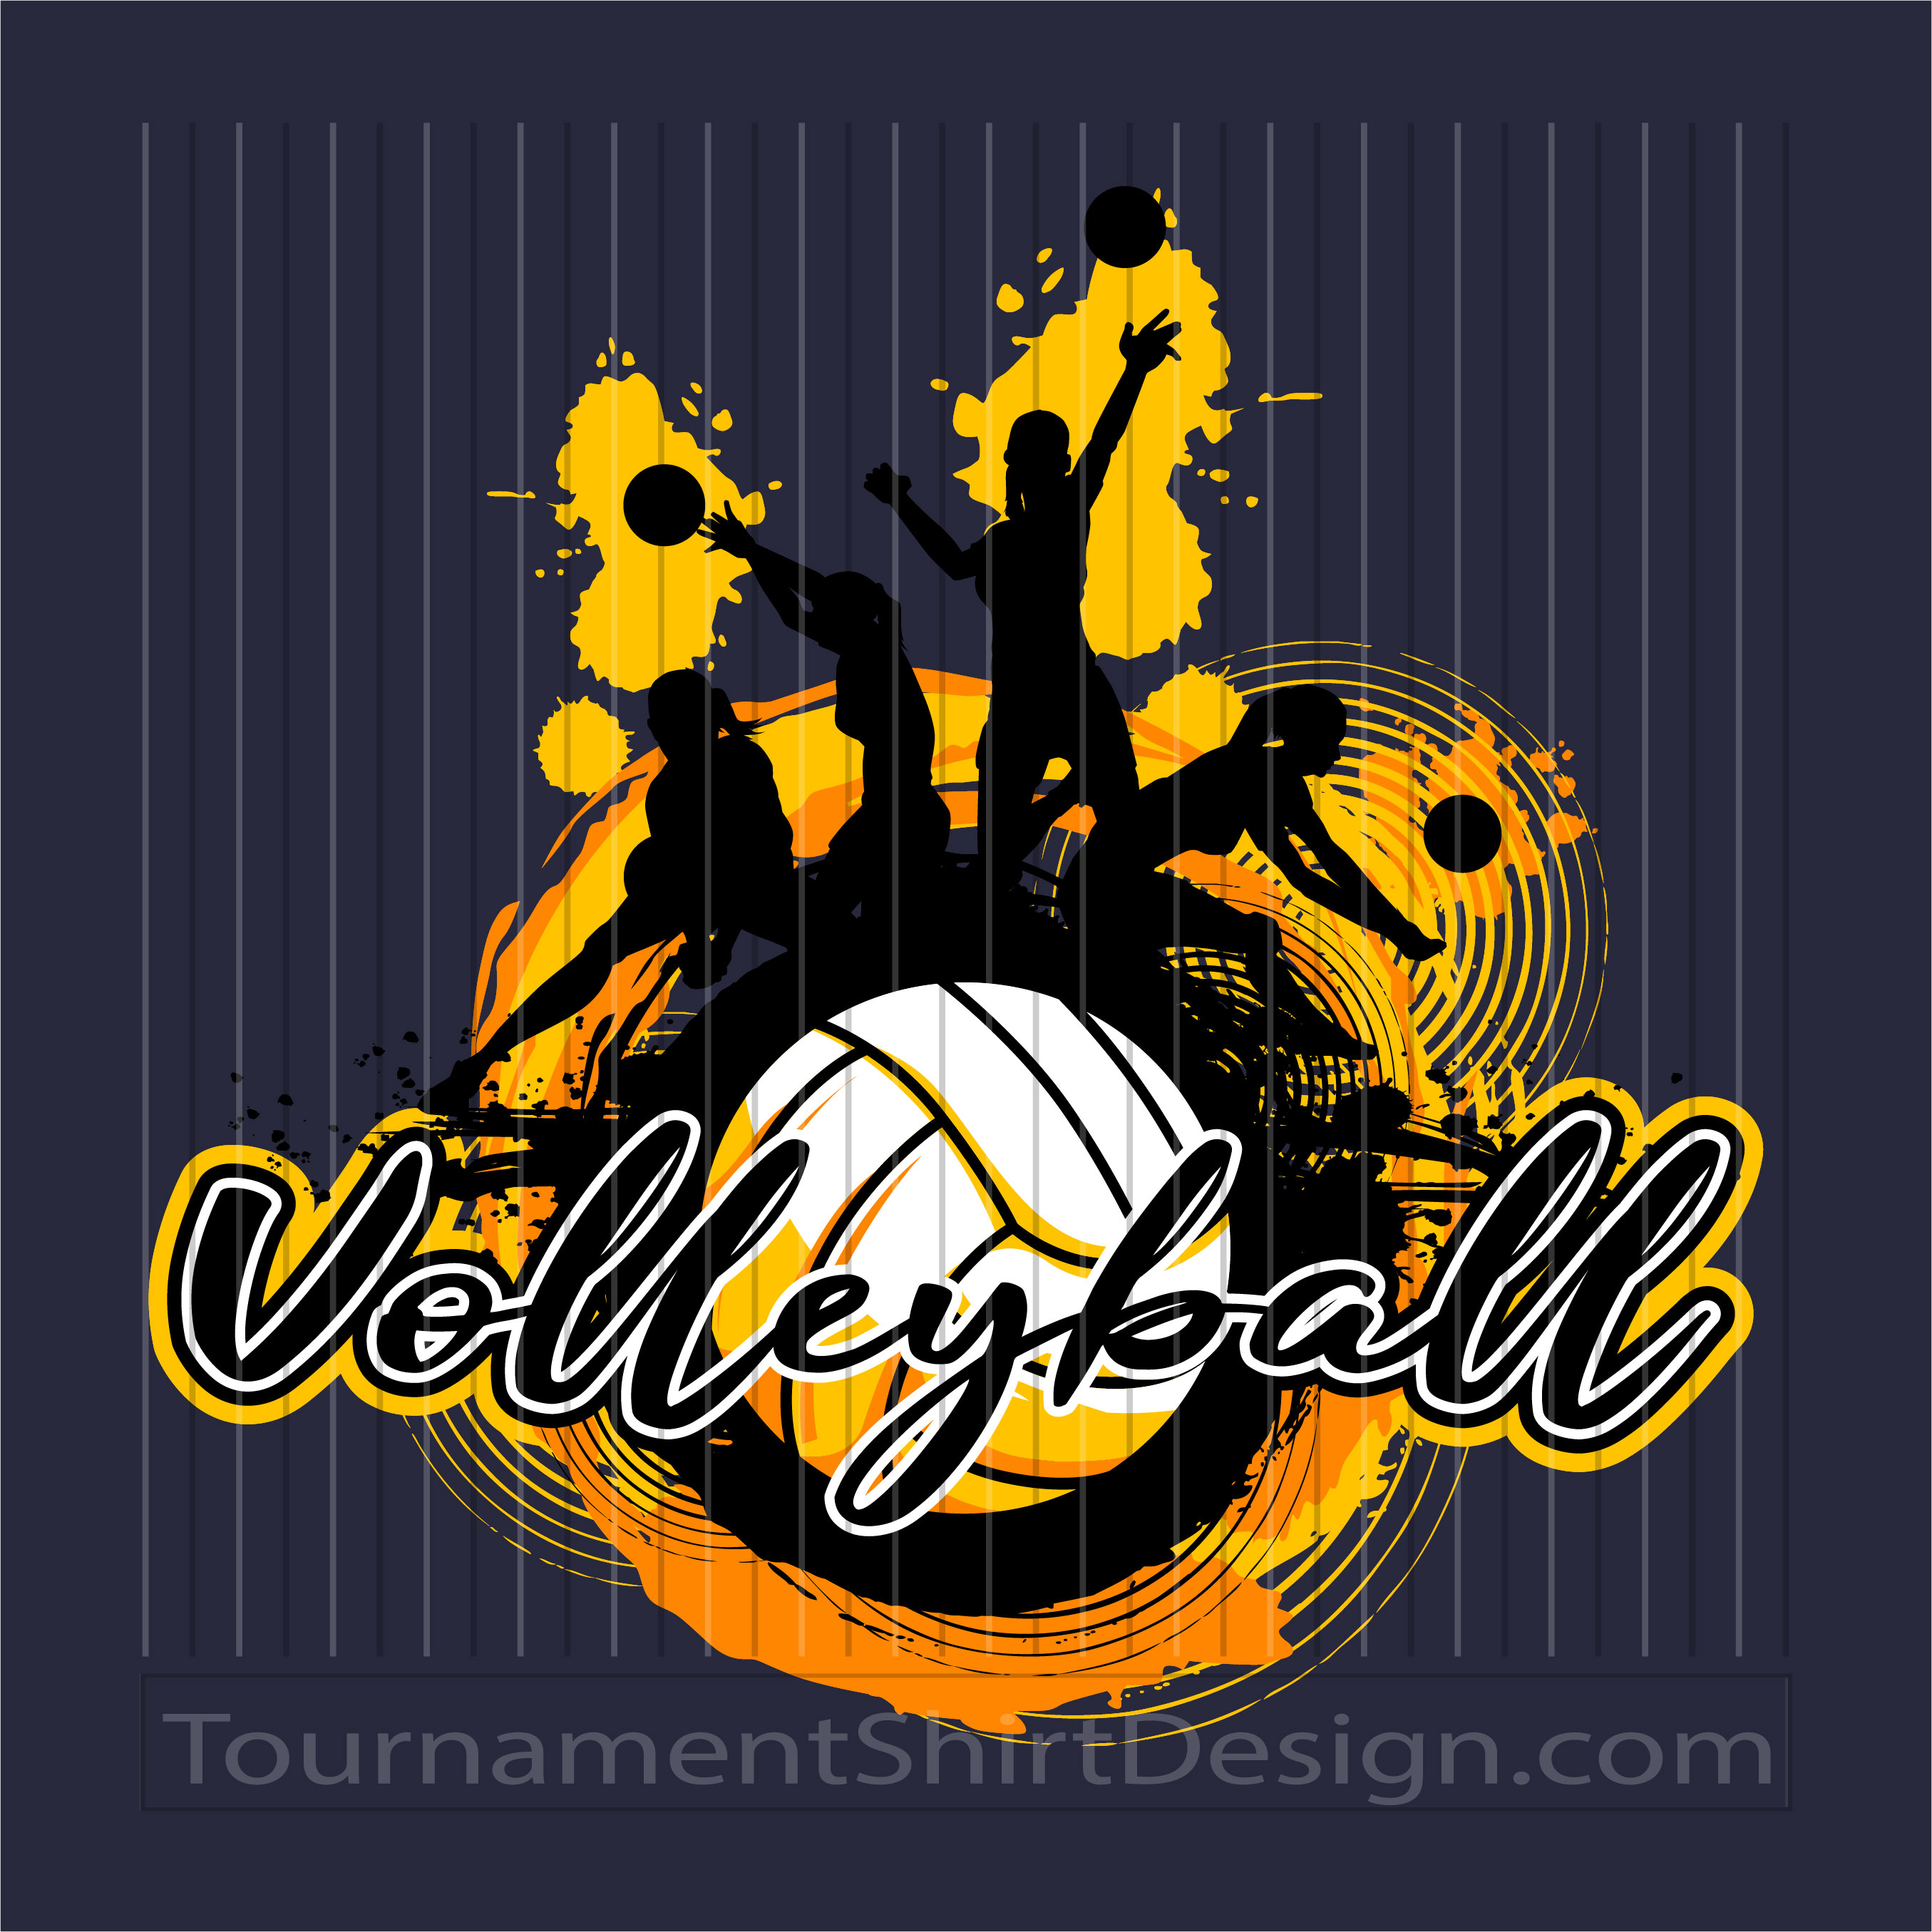 Volleyball Tournament Art